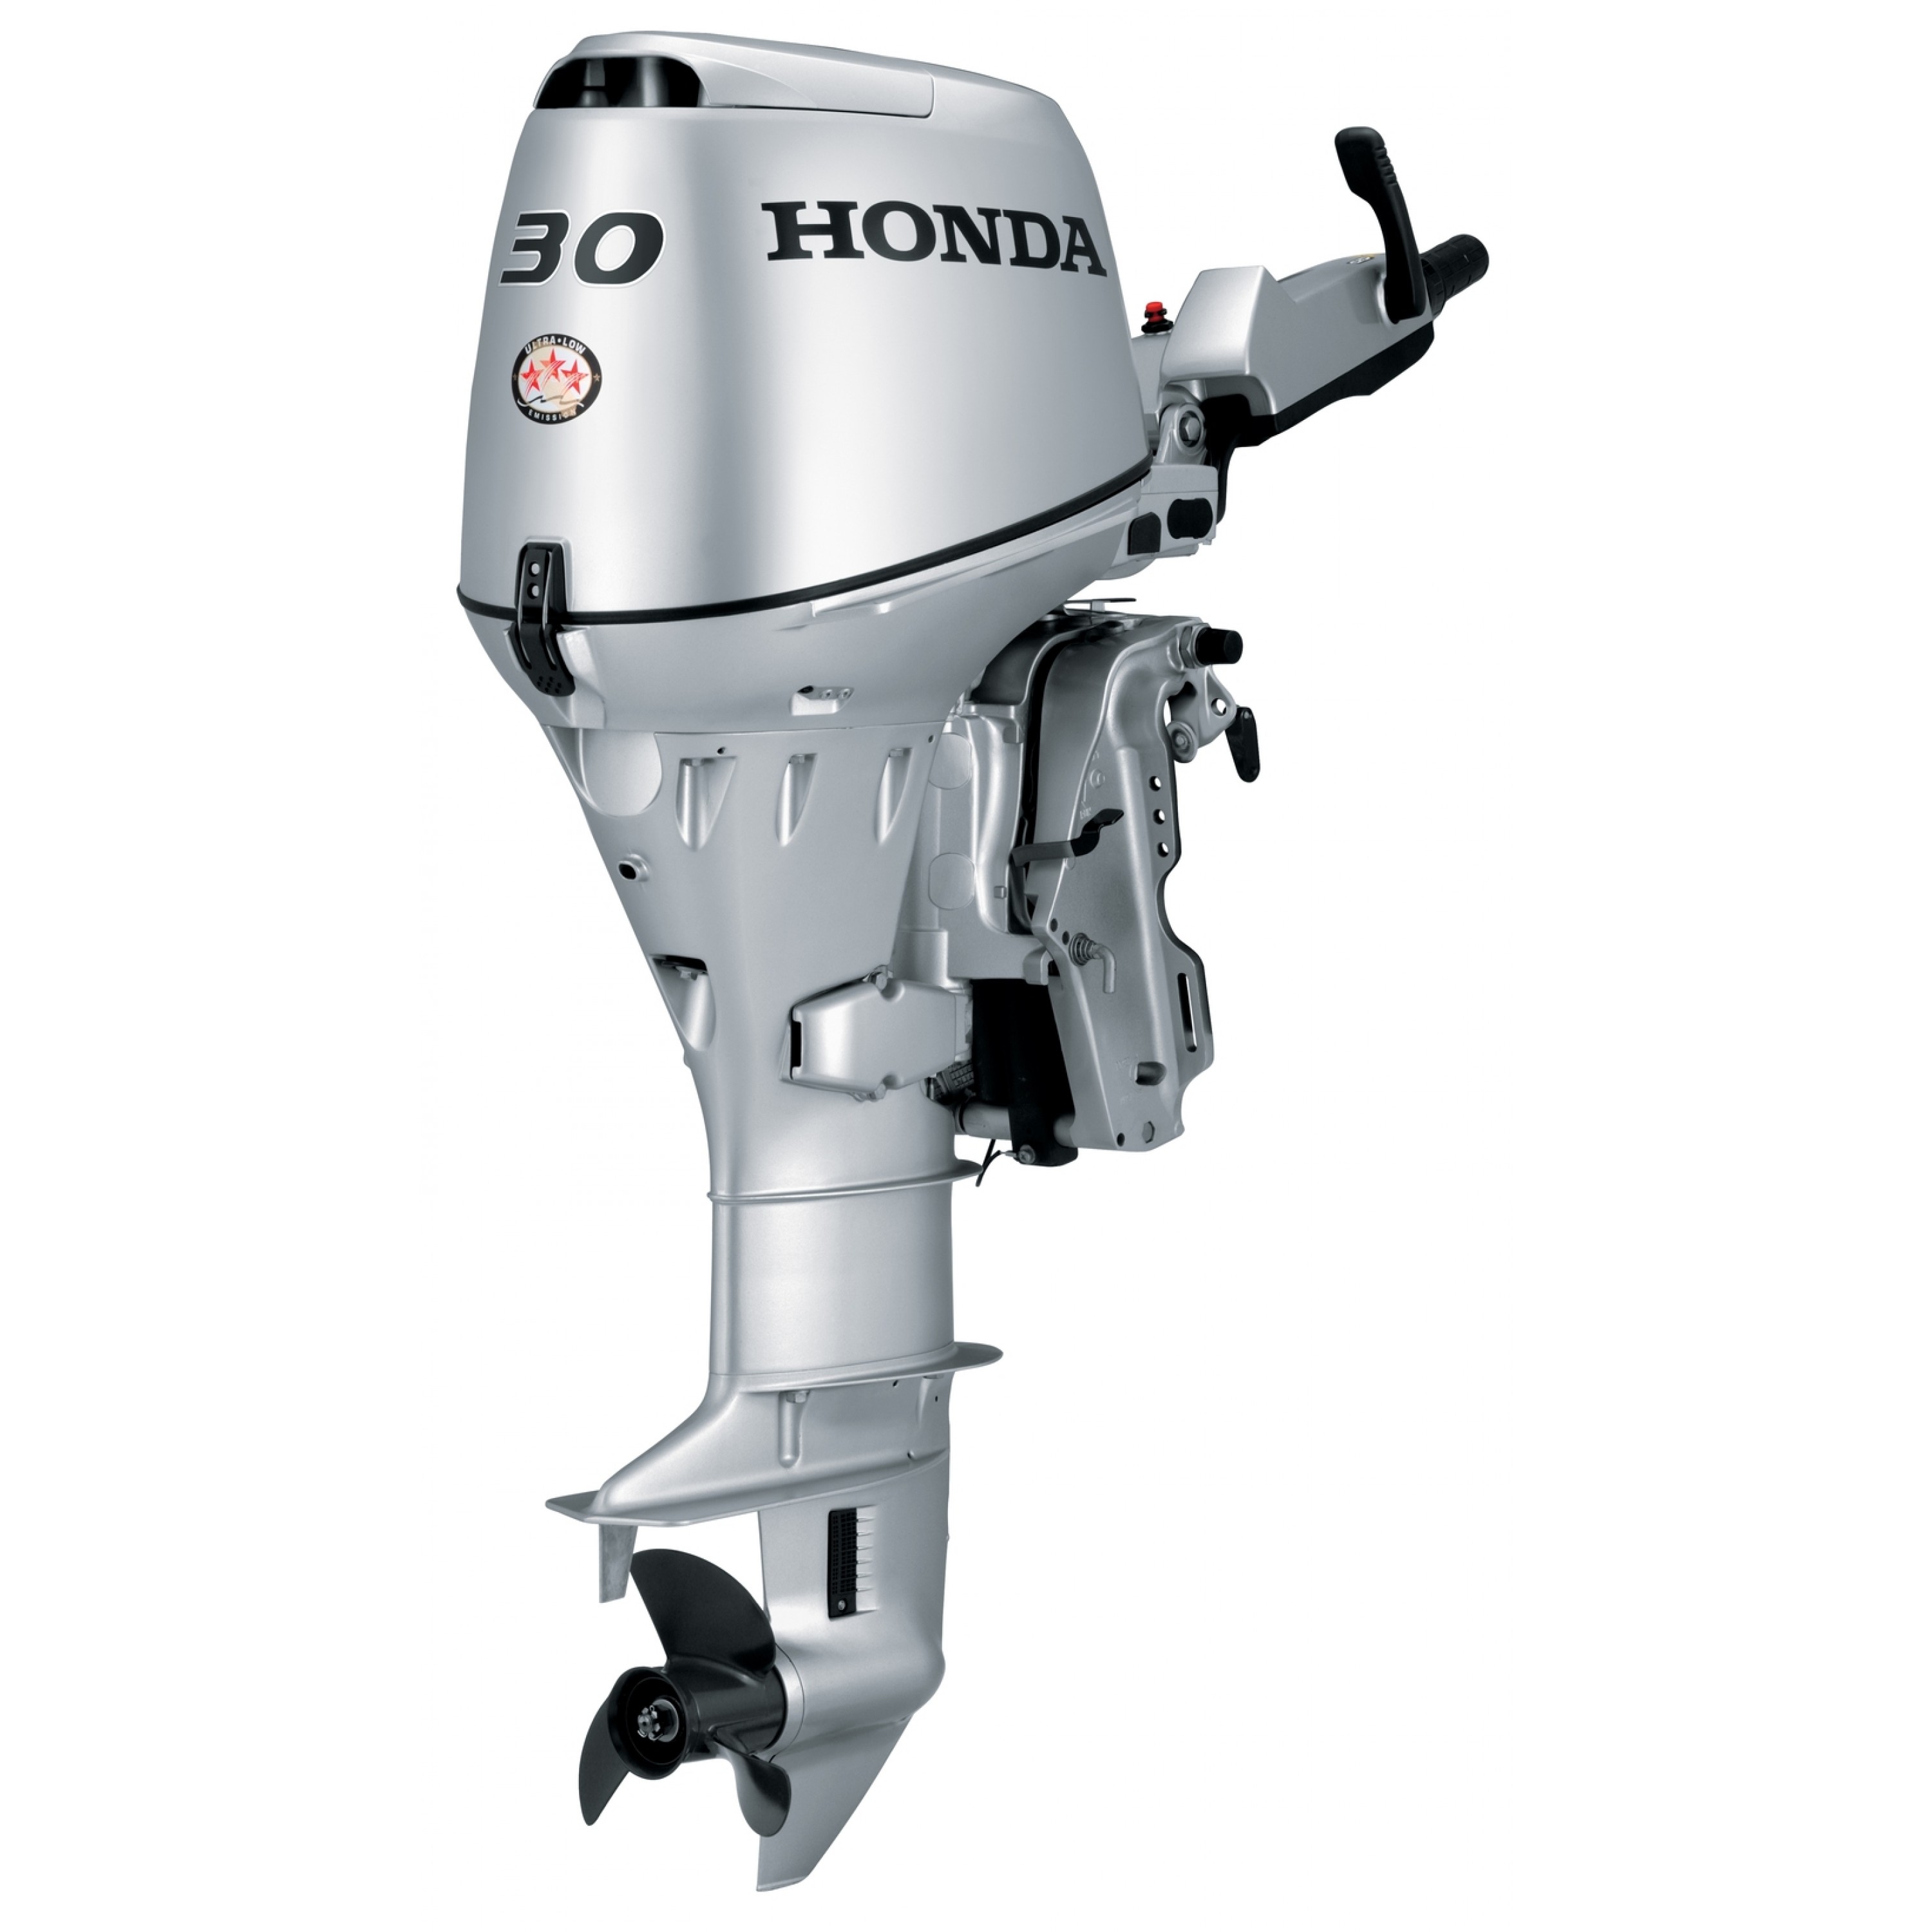 30 HP Honda Outboard Motor, BF30DK3LRTC